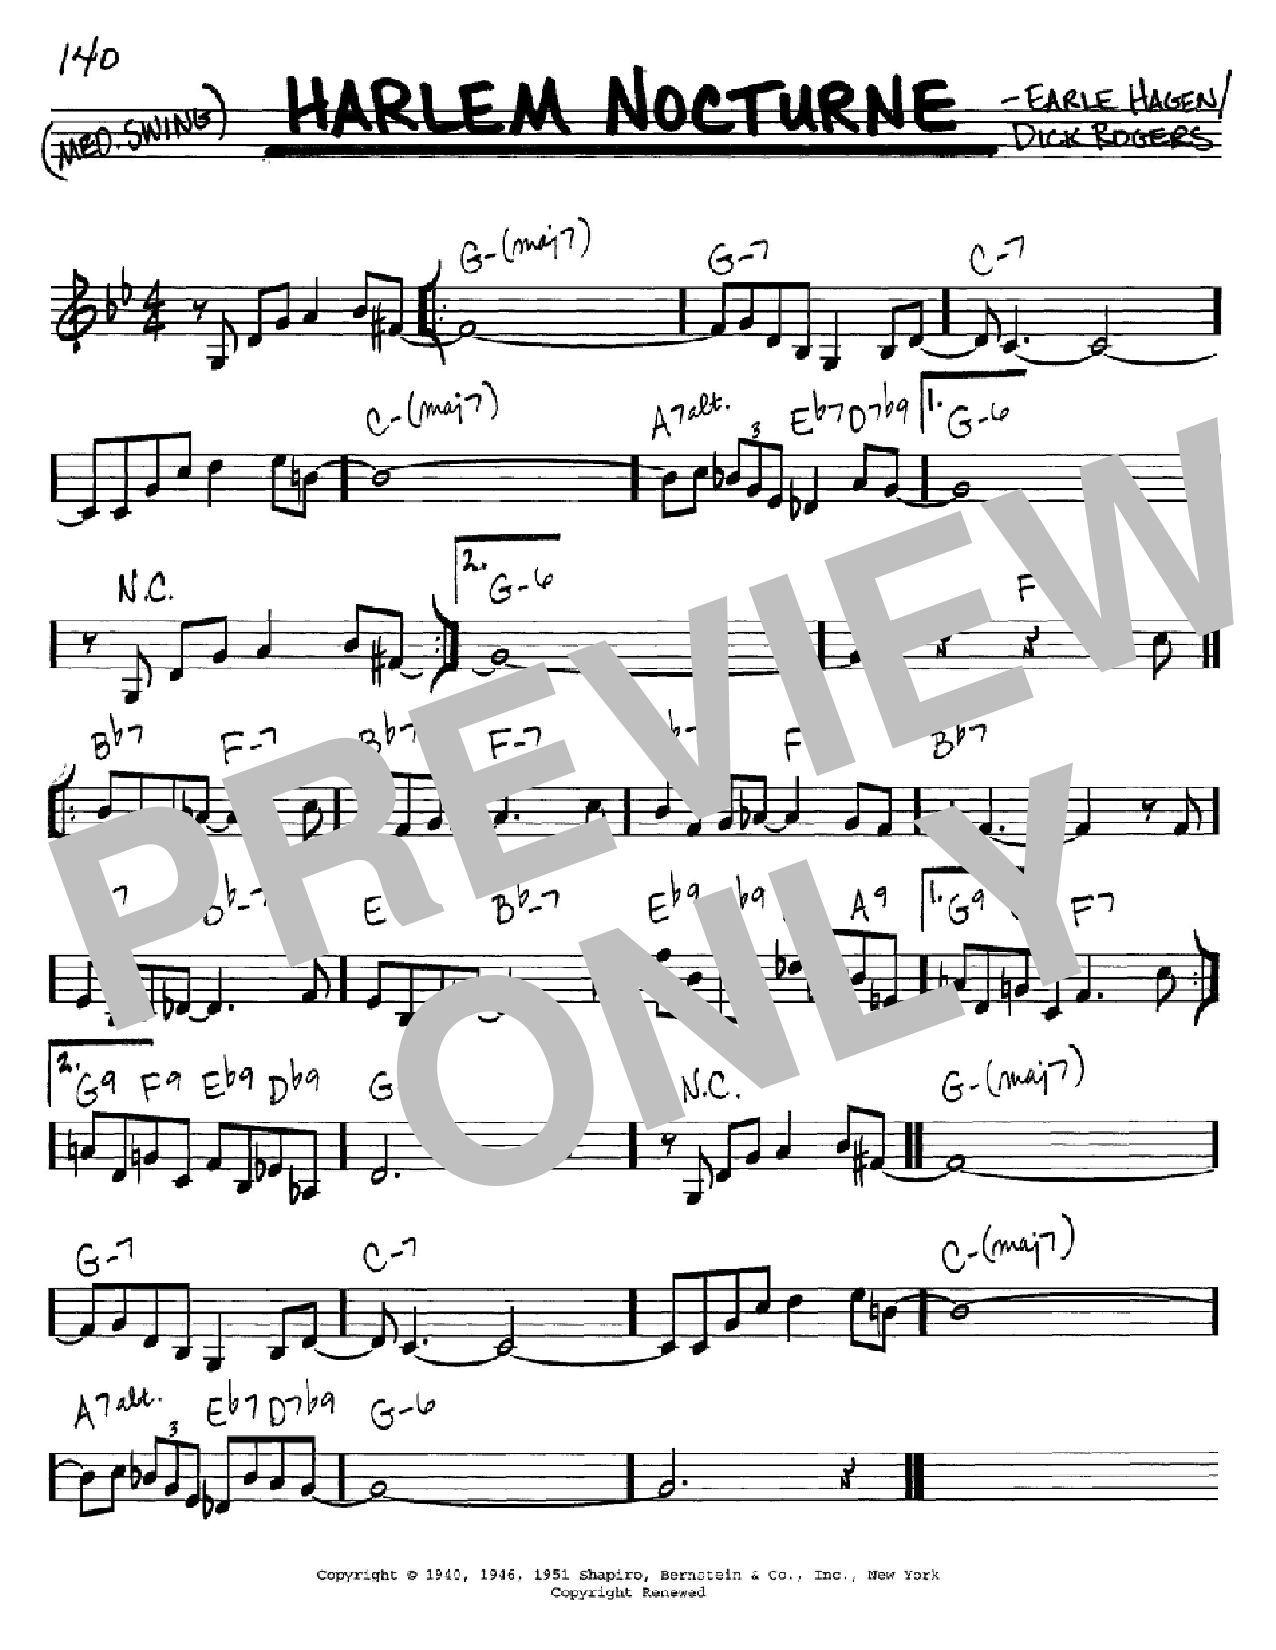 Earle Hagen Harlem Nocturne Sheet Music Notes & Chords for Melody Line, Lyrics & Chords - Download or Print PDF